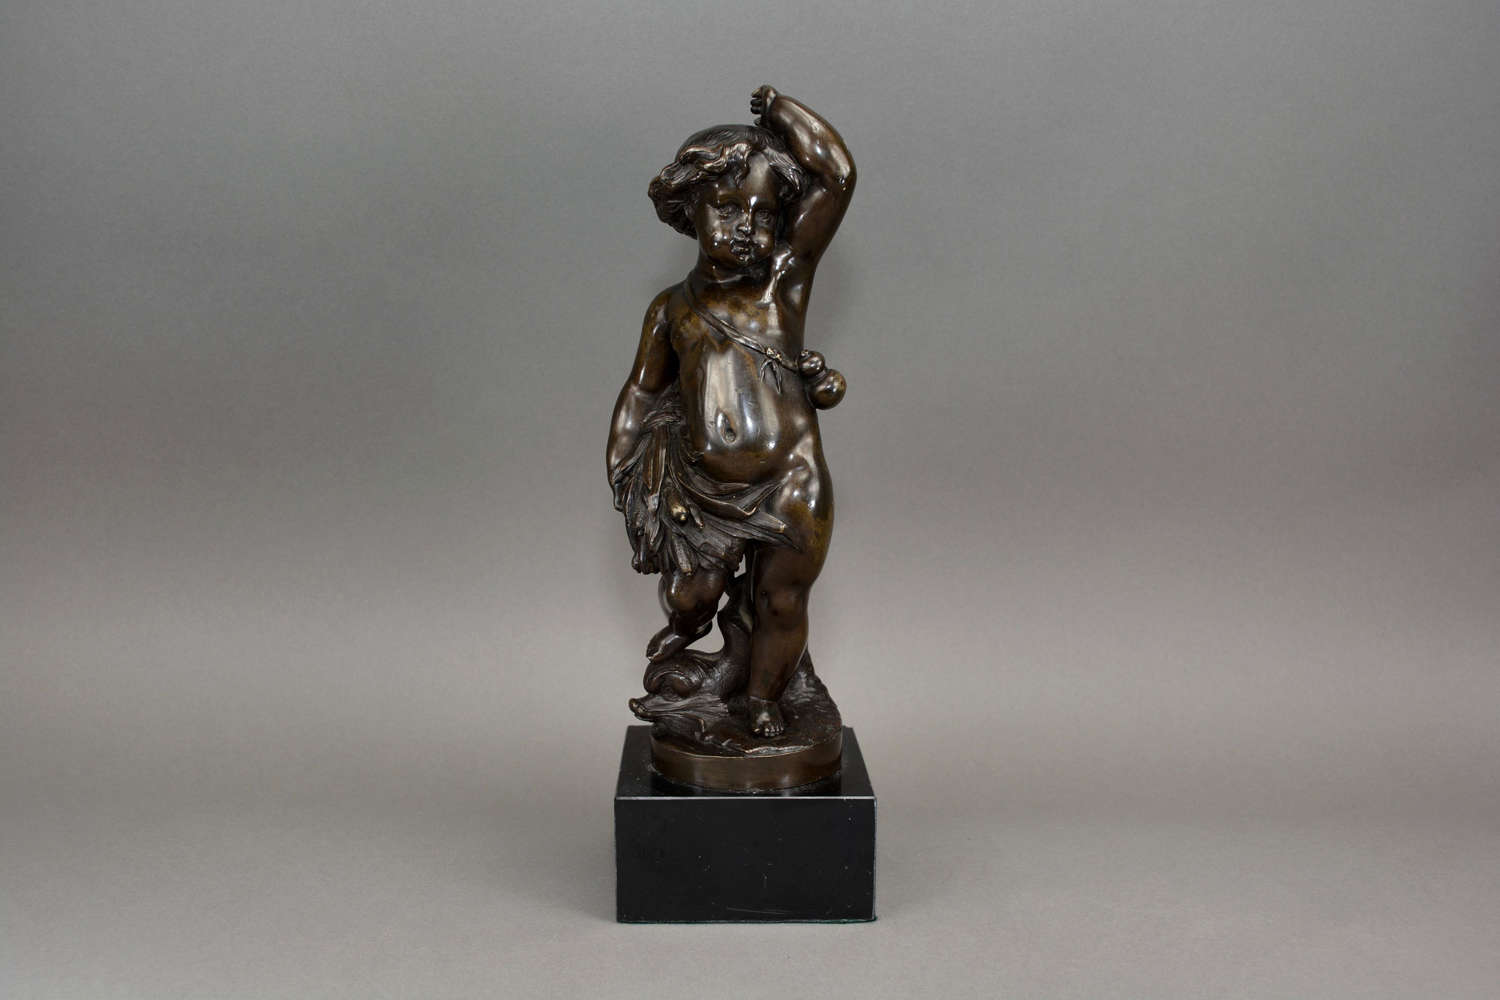 Antique bronze figure of a cherub holding a wheat sheaf